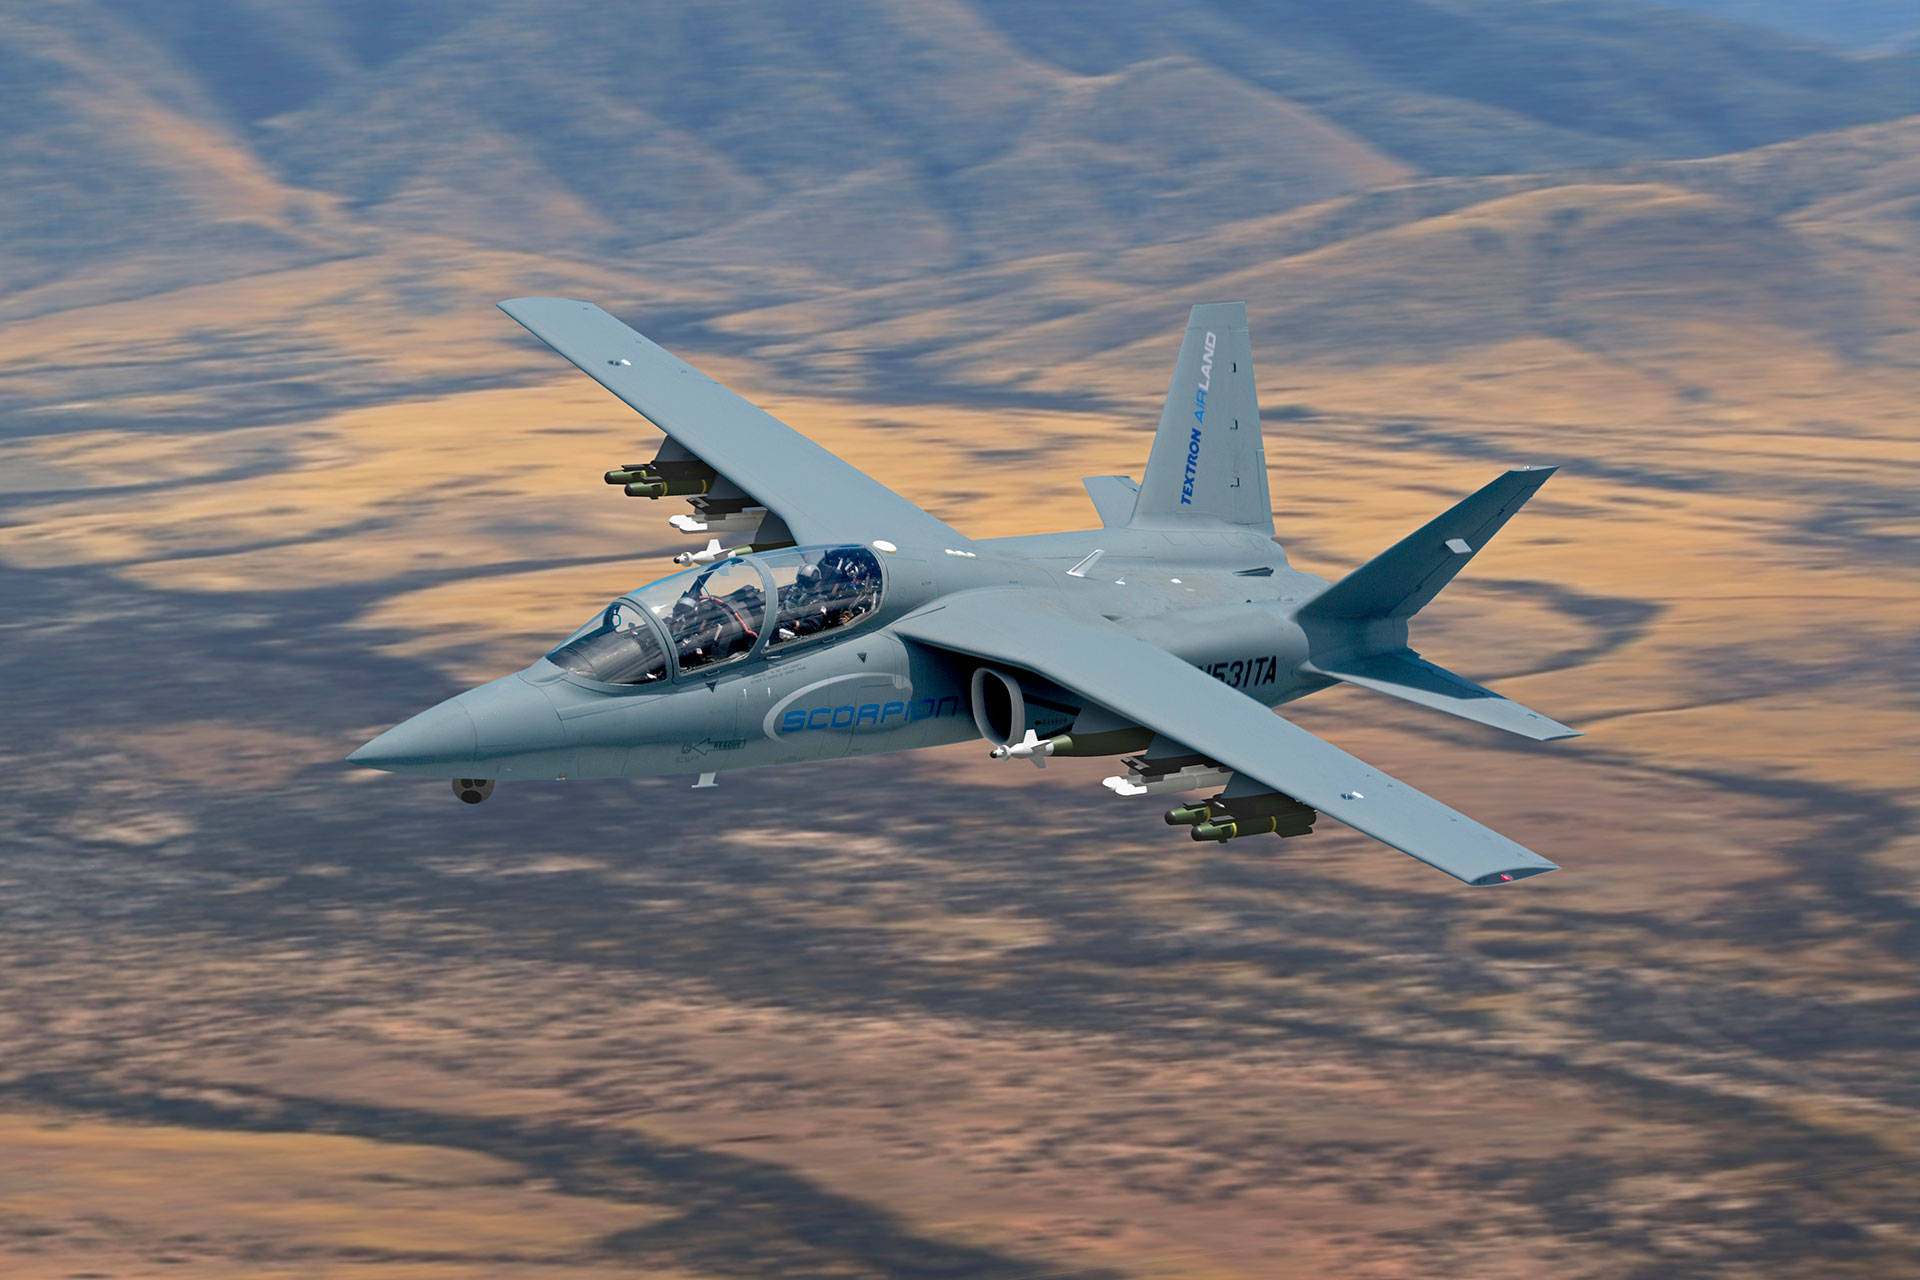 原创蝎子轻型飞机,优势十分突出,满足多数国家需求!